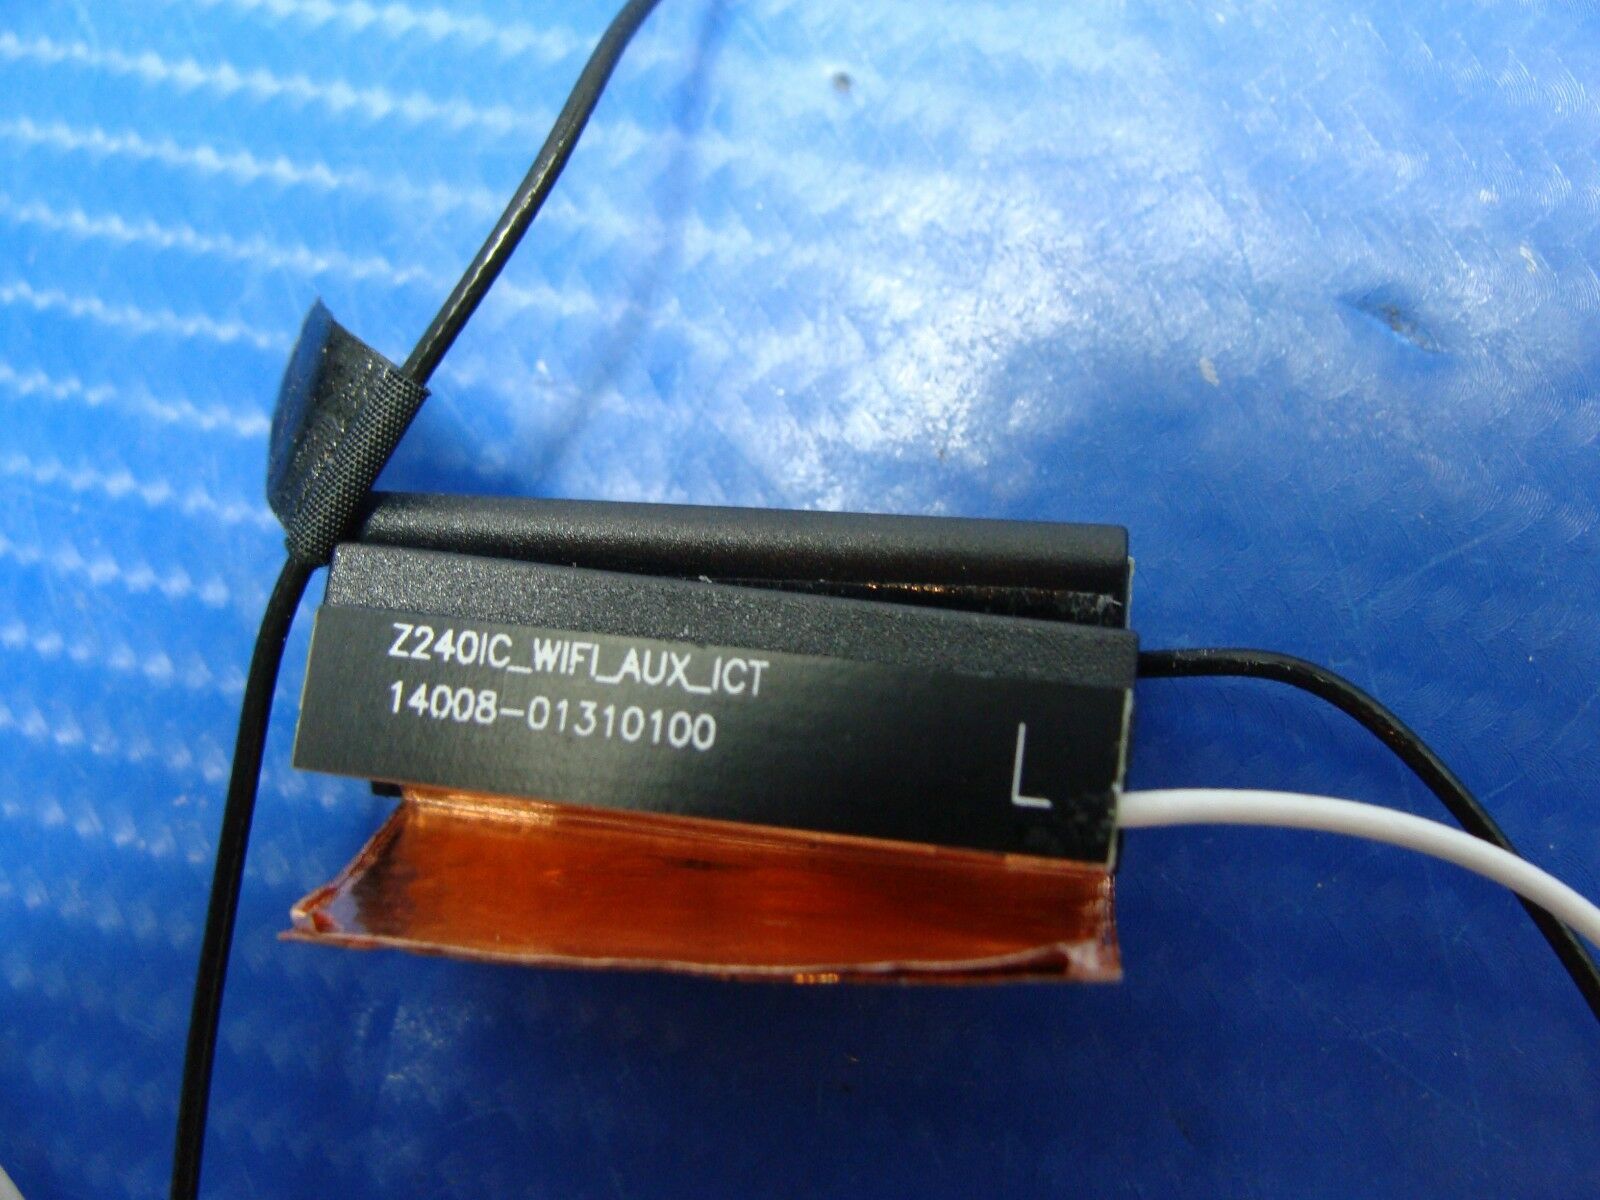 Asus Zen AiO Pro Z240IC 23.8